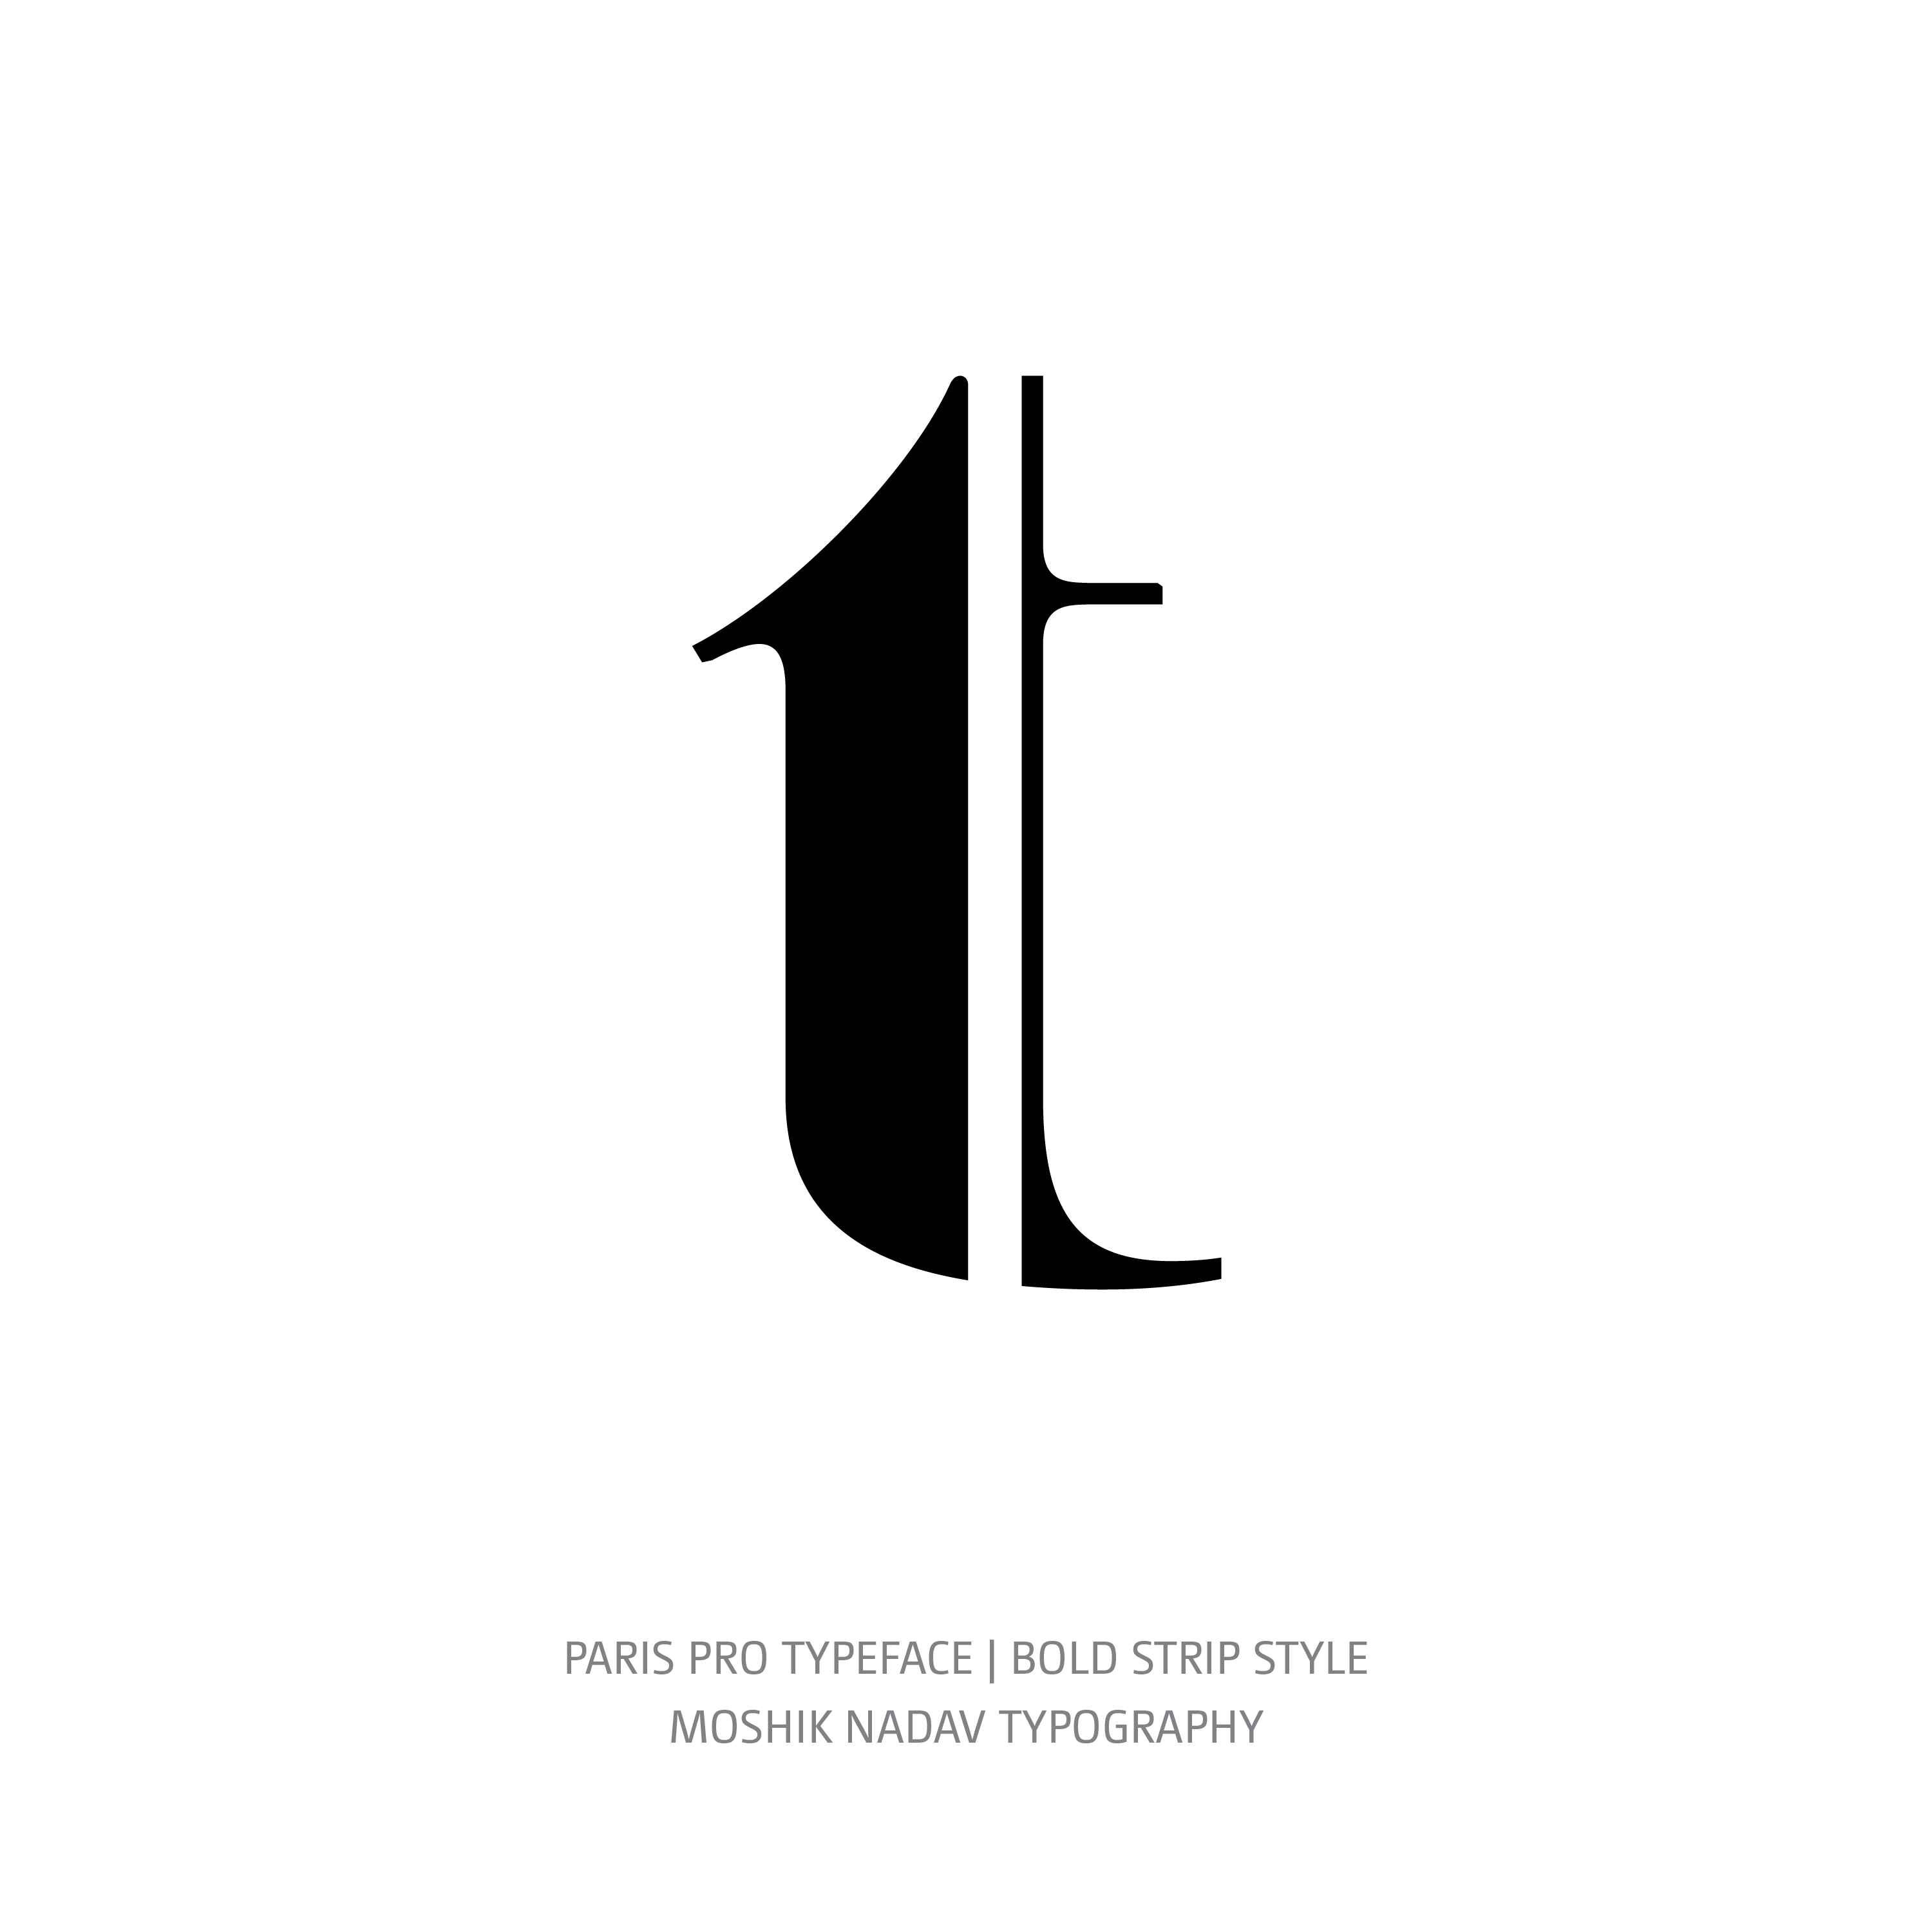 Paris Pro Typeface Bold Strip t